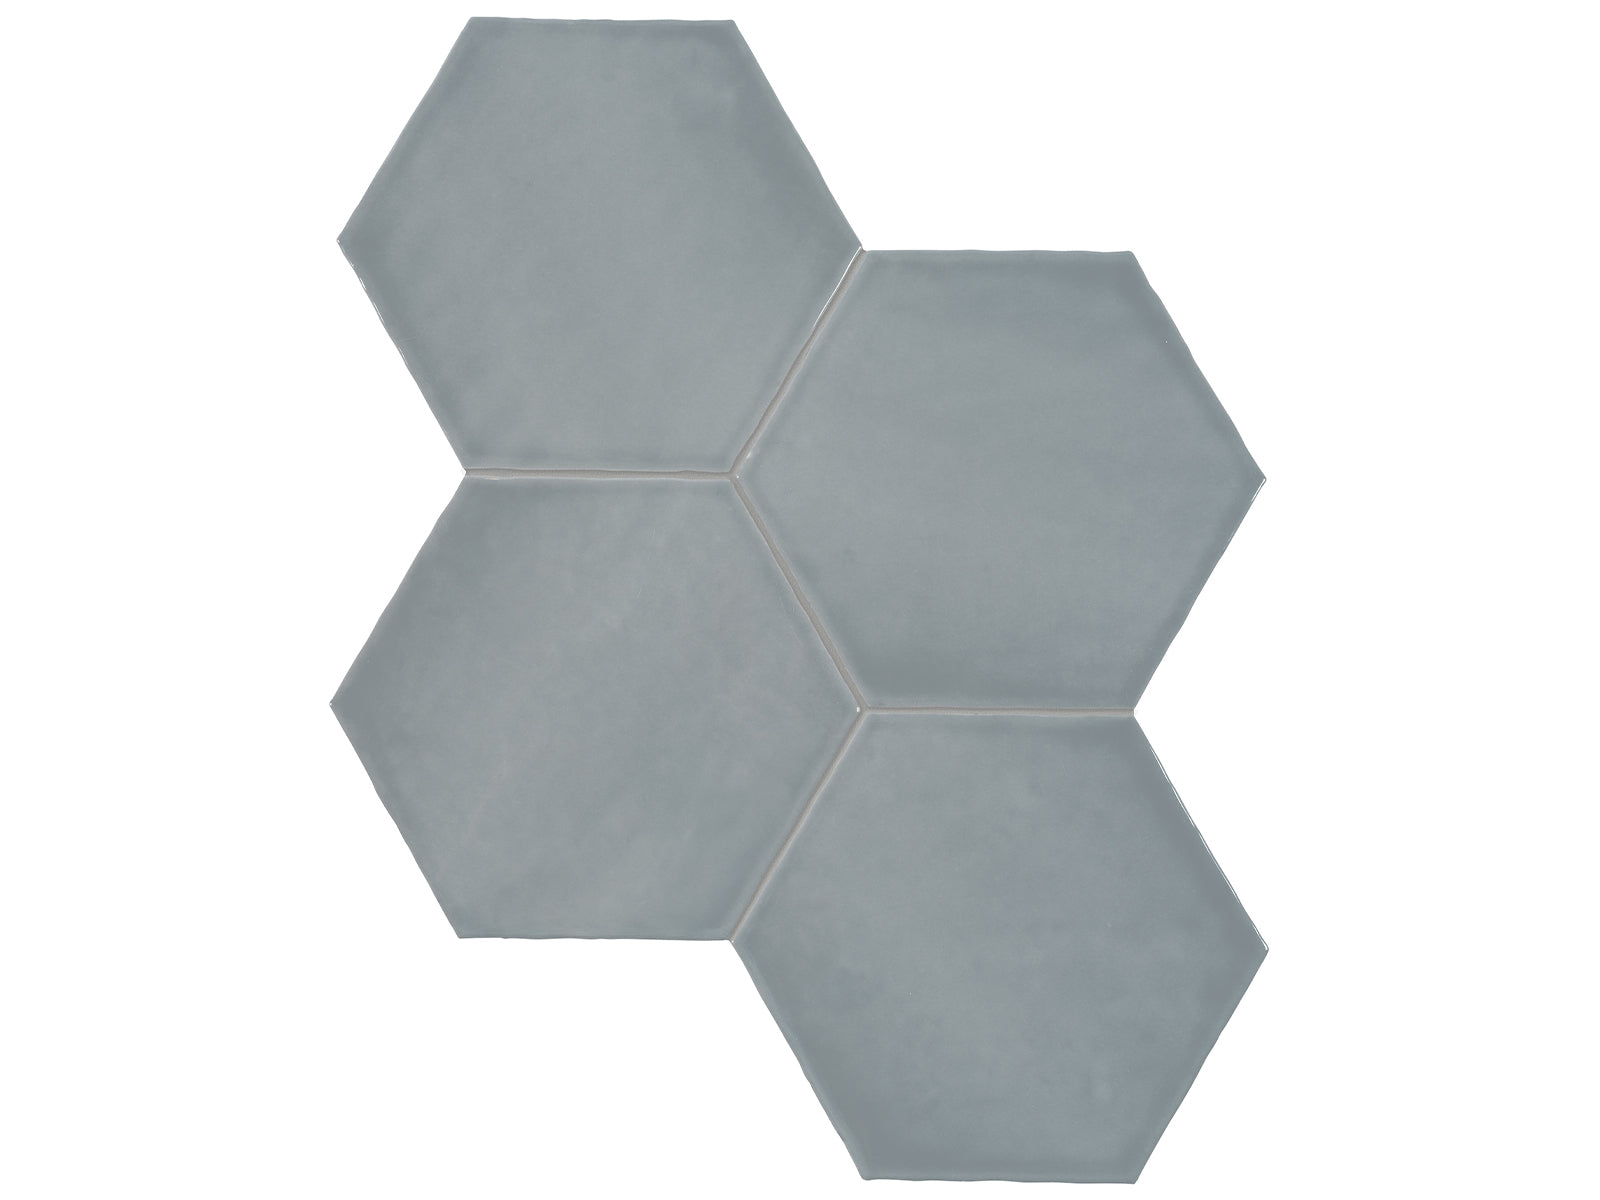 6 in Teramoda Sterling Hexagon Glossy Pressed Glazed Ceramic Tile